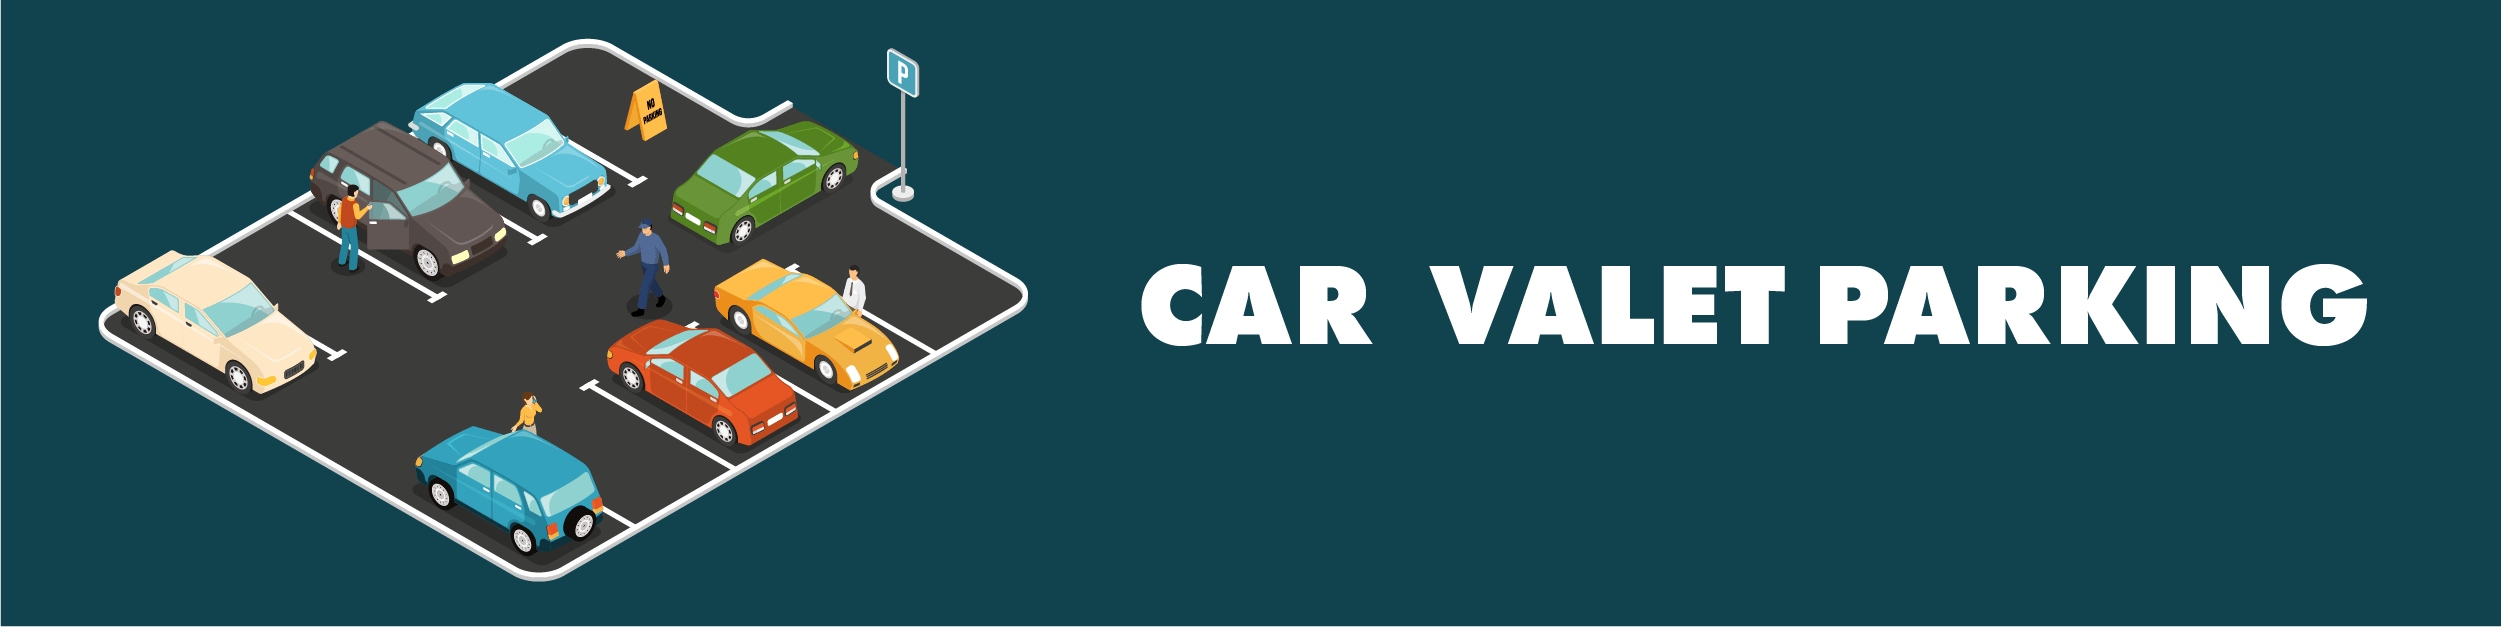 Car Valet Parking